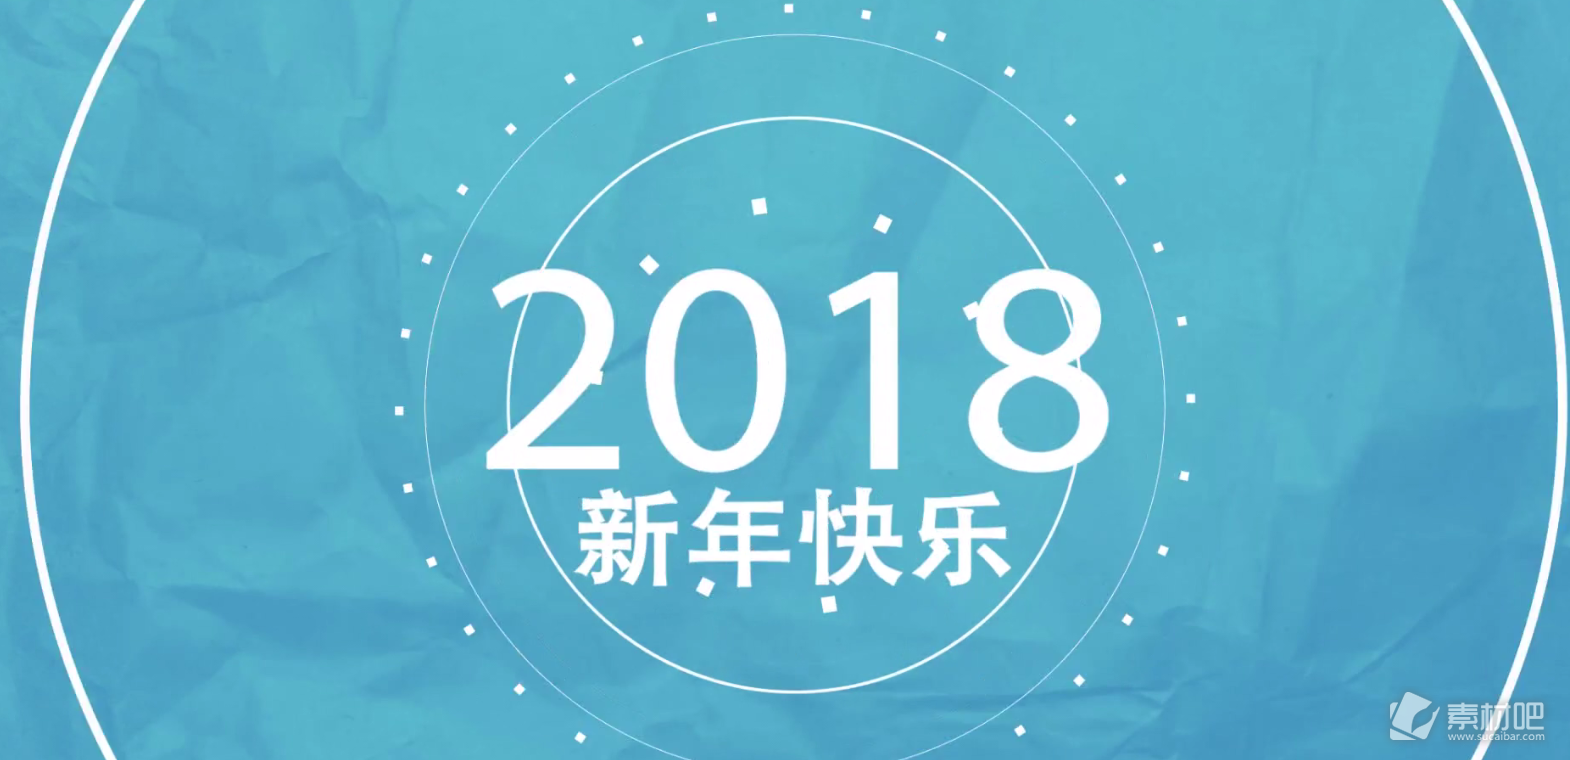 2018年手绘MG动画新年快乐